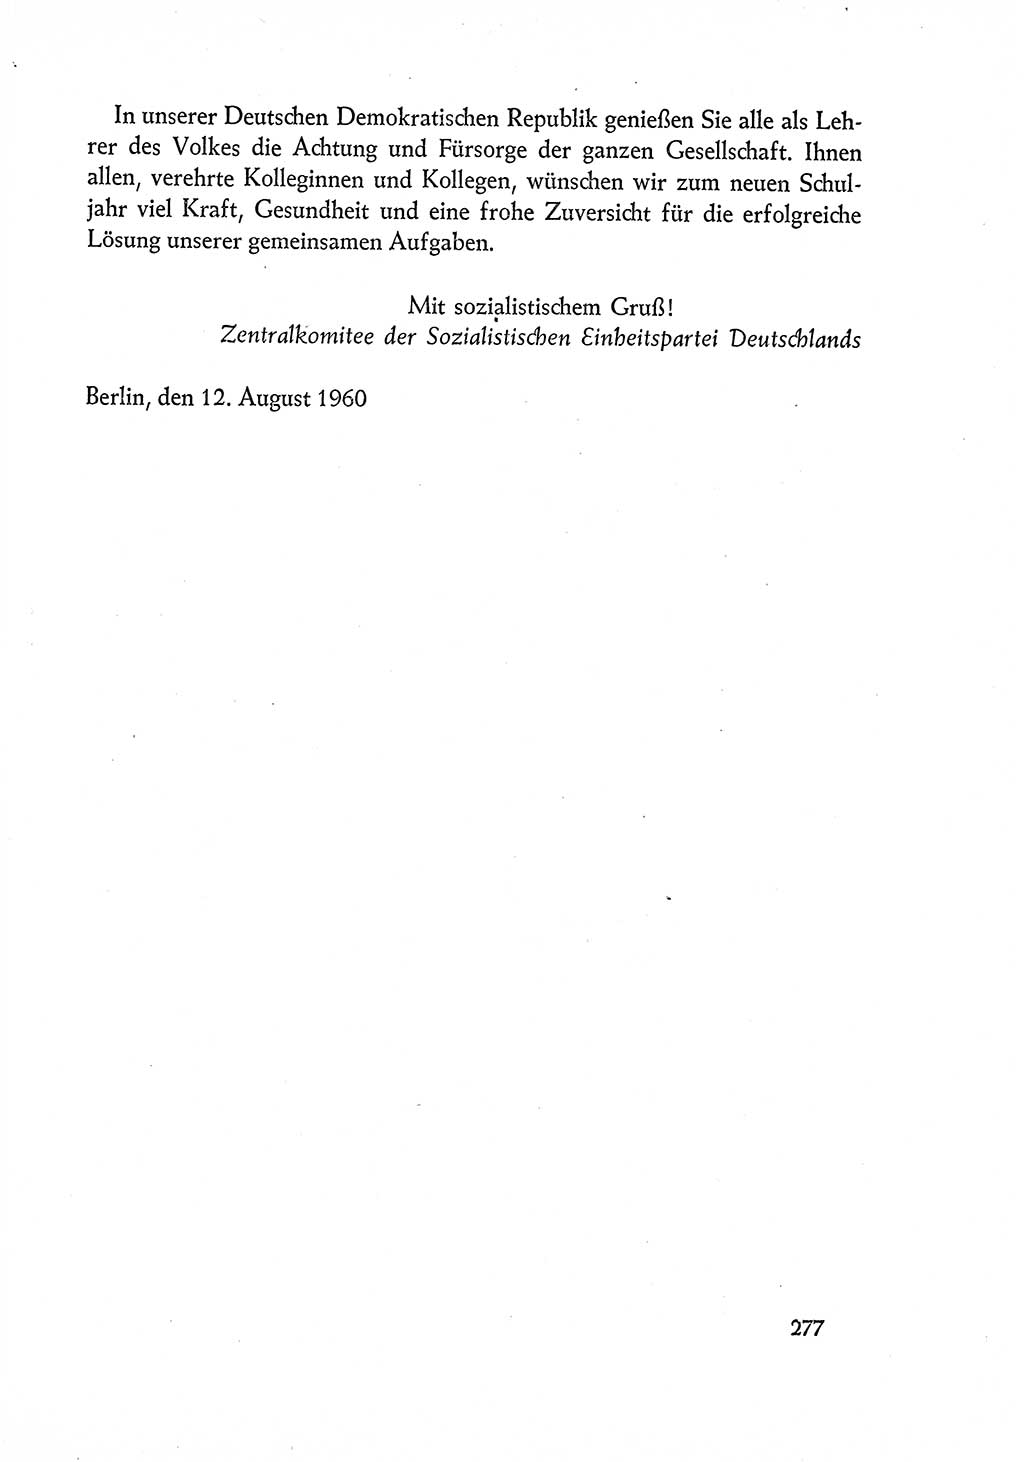 Dokumente der Sozialistischen Einheitspartei Deutschlands (SED) [Deutsche Demokratische Republik (DDR)] 1960-1961, Seite 277 (Dok. SED DDR 1960-1961, S. 277)